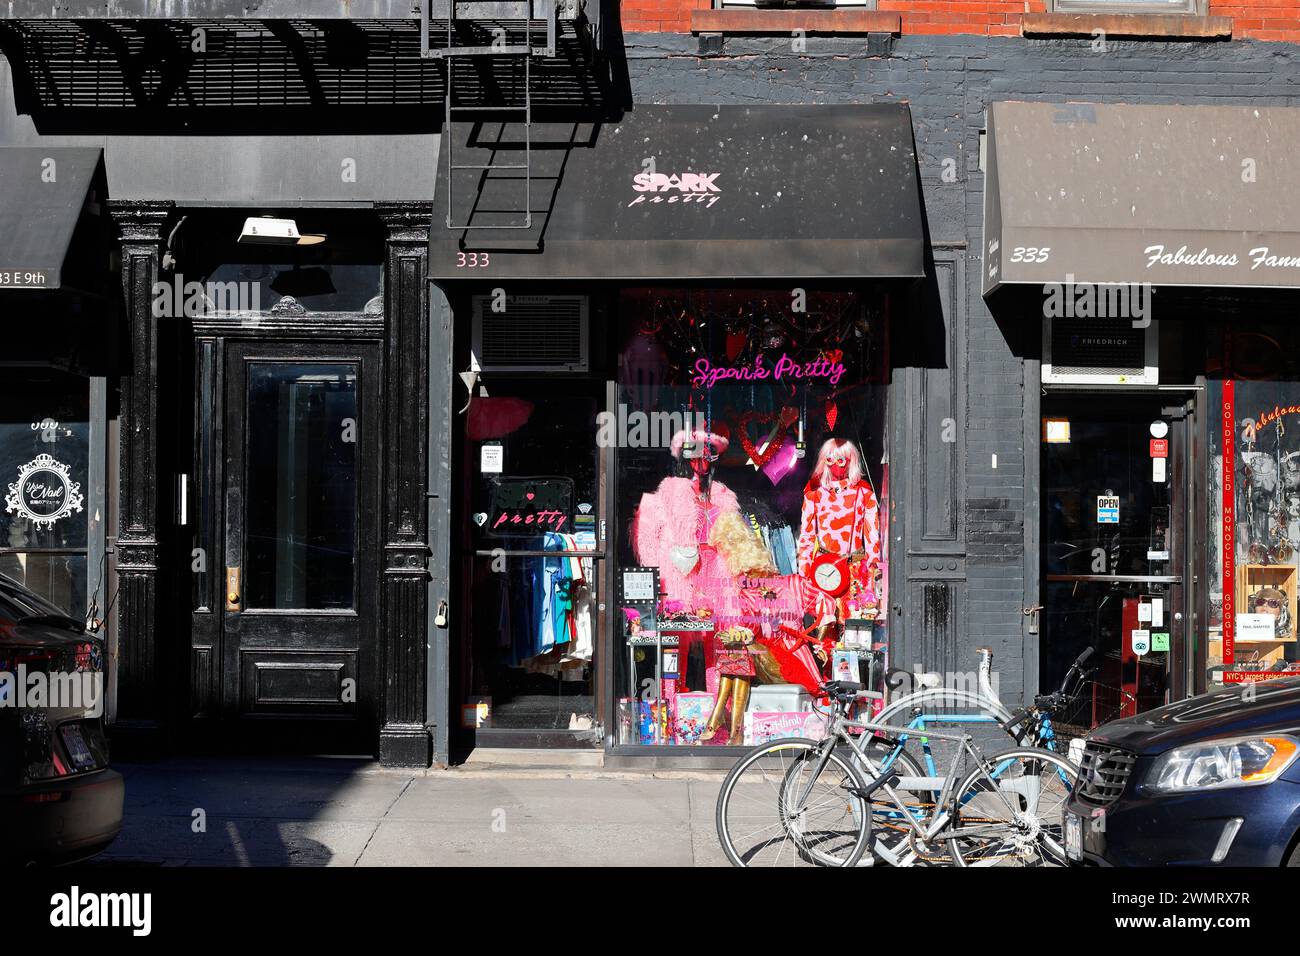 Spark Pretty, 333 E 9th St, New York, NYC, Ladenfront eines farbenfrohen Vintage-Bekleidungsgeschäfts in Manhattans East Village Nachbarschaft. Stockfoto